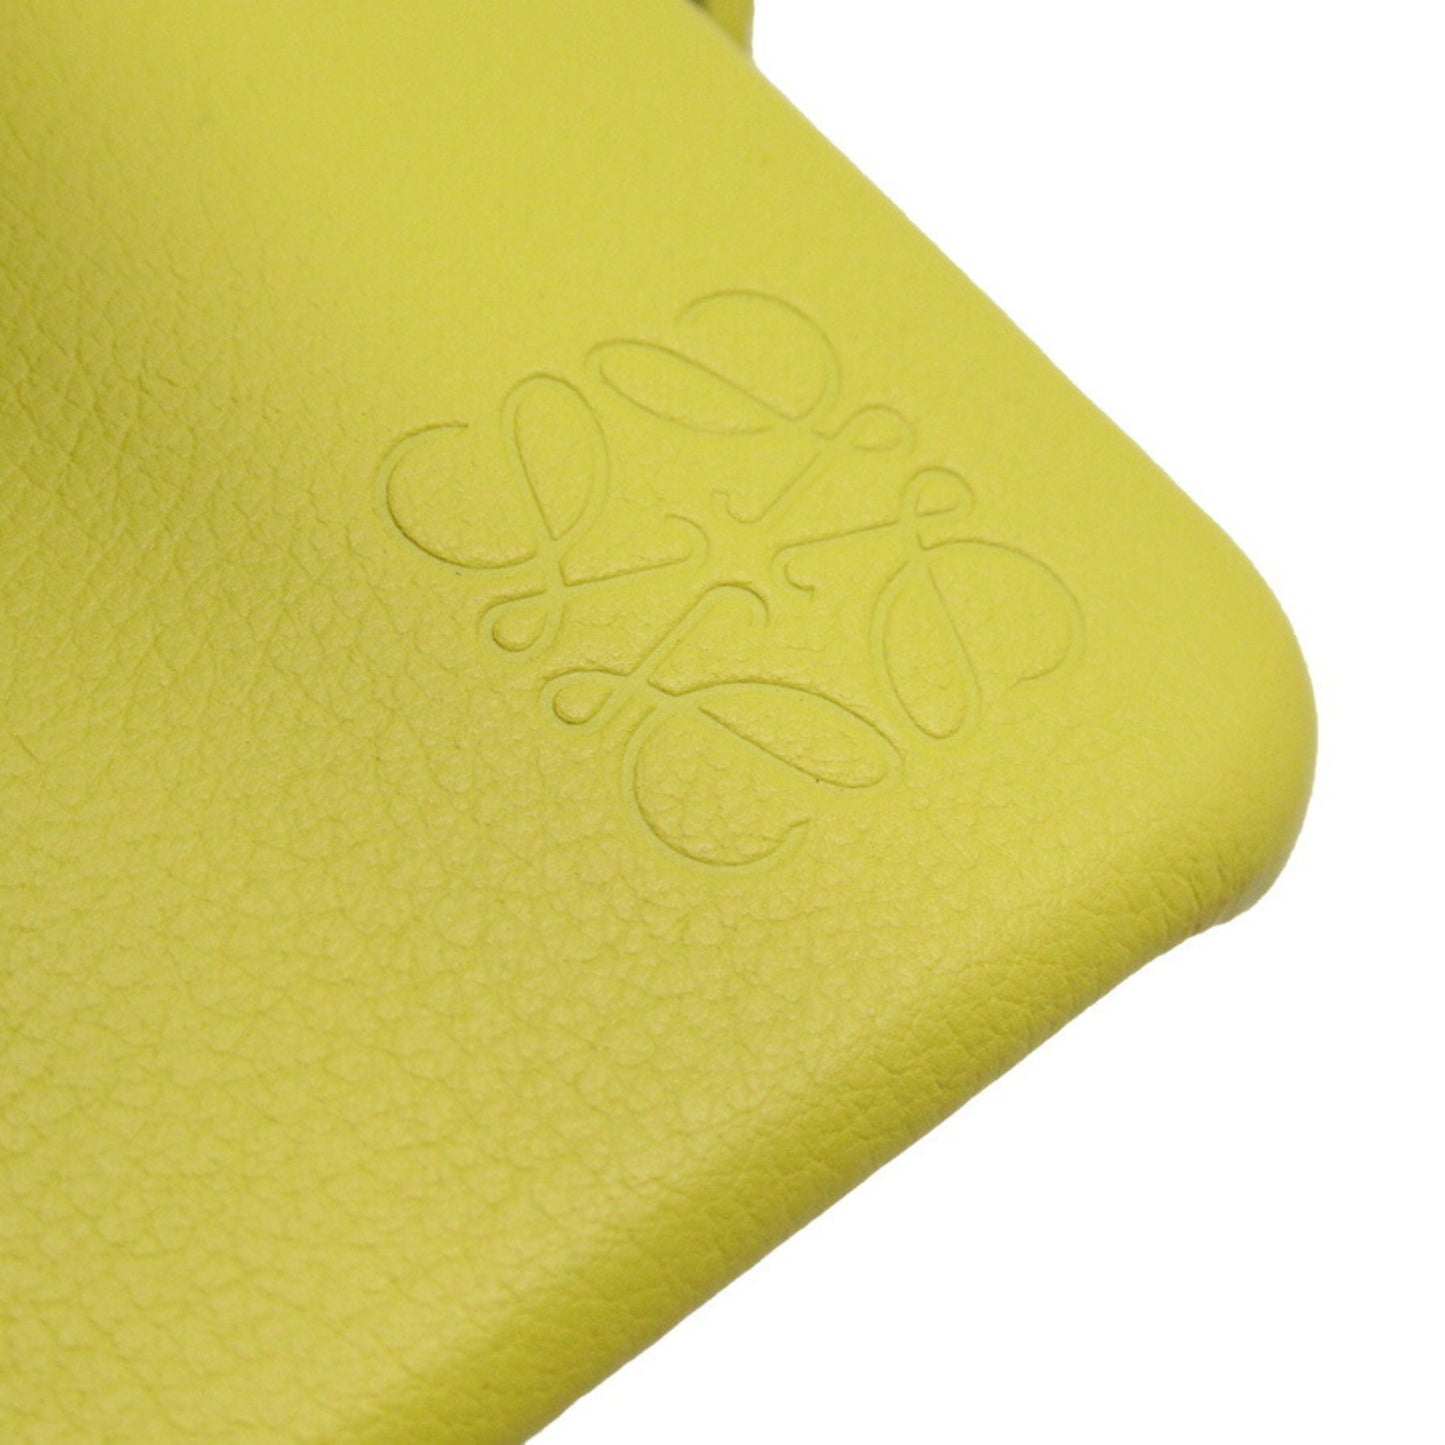 Loewe Women's Loewe Leather Elephant Handbag in Yellow